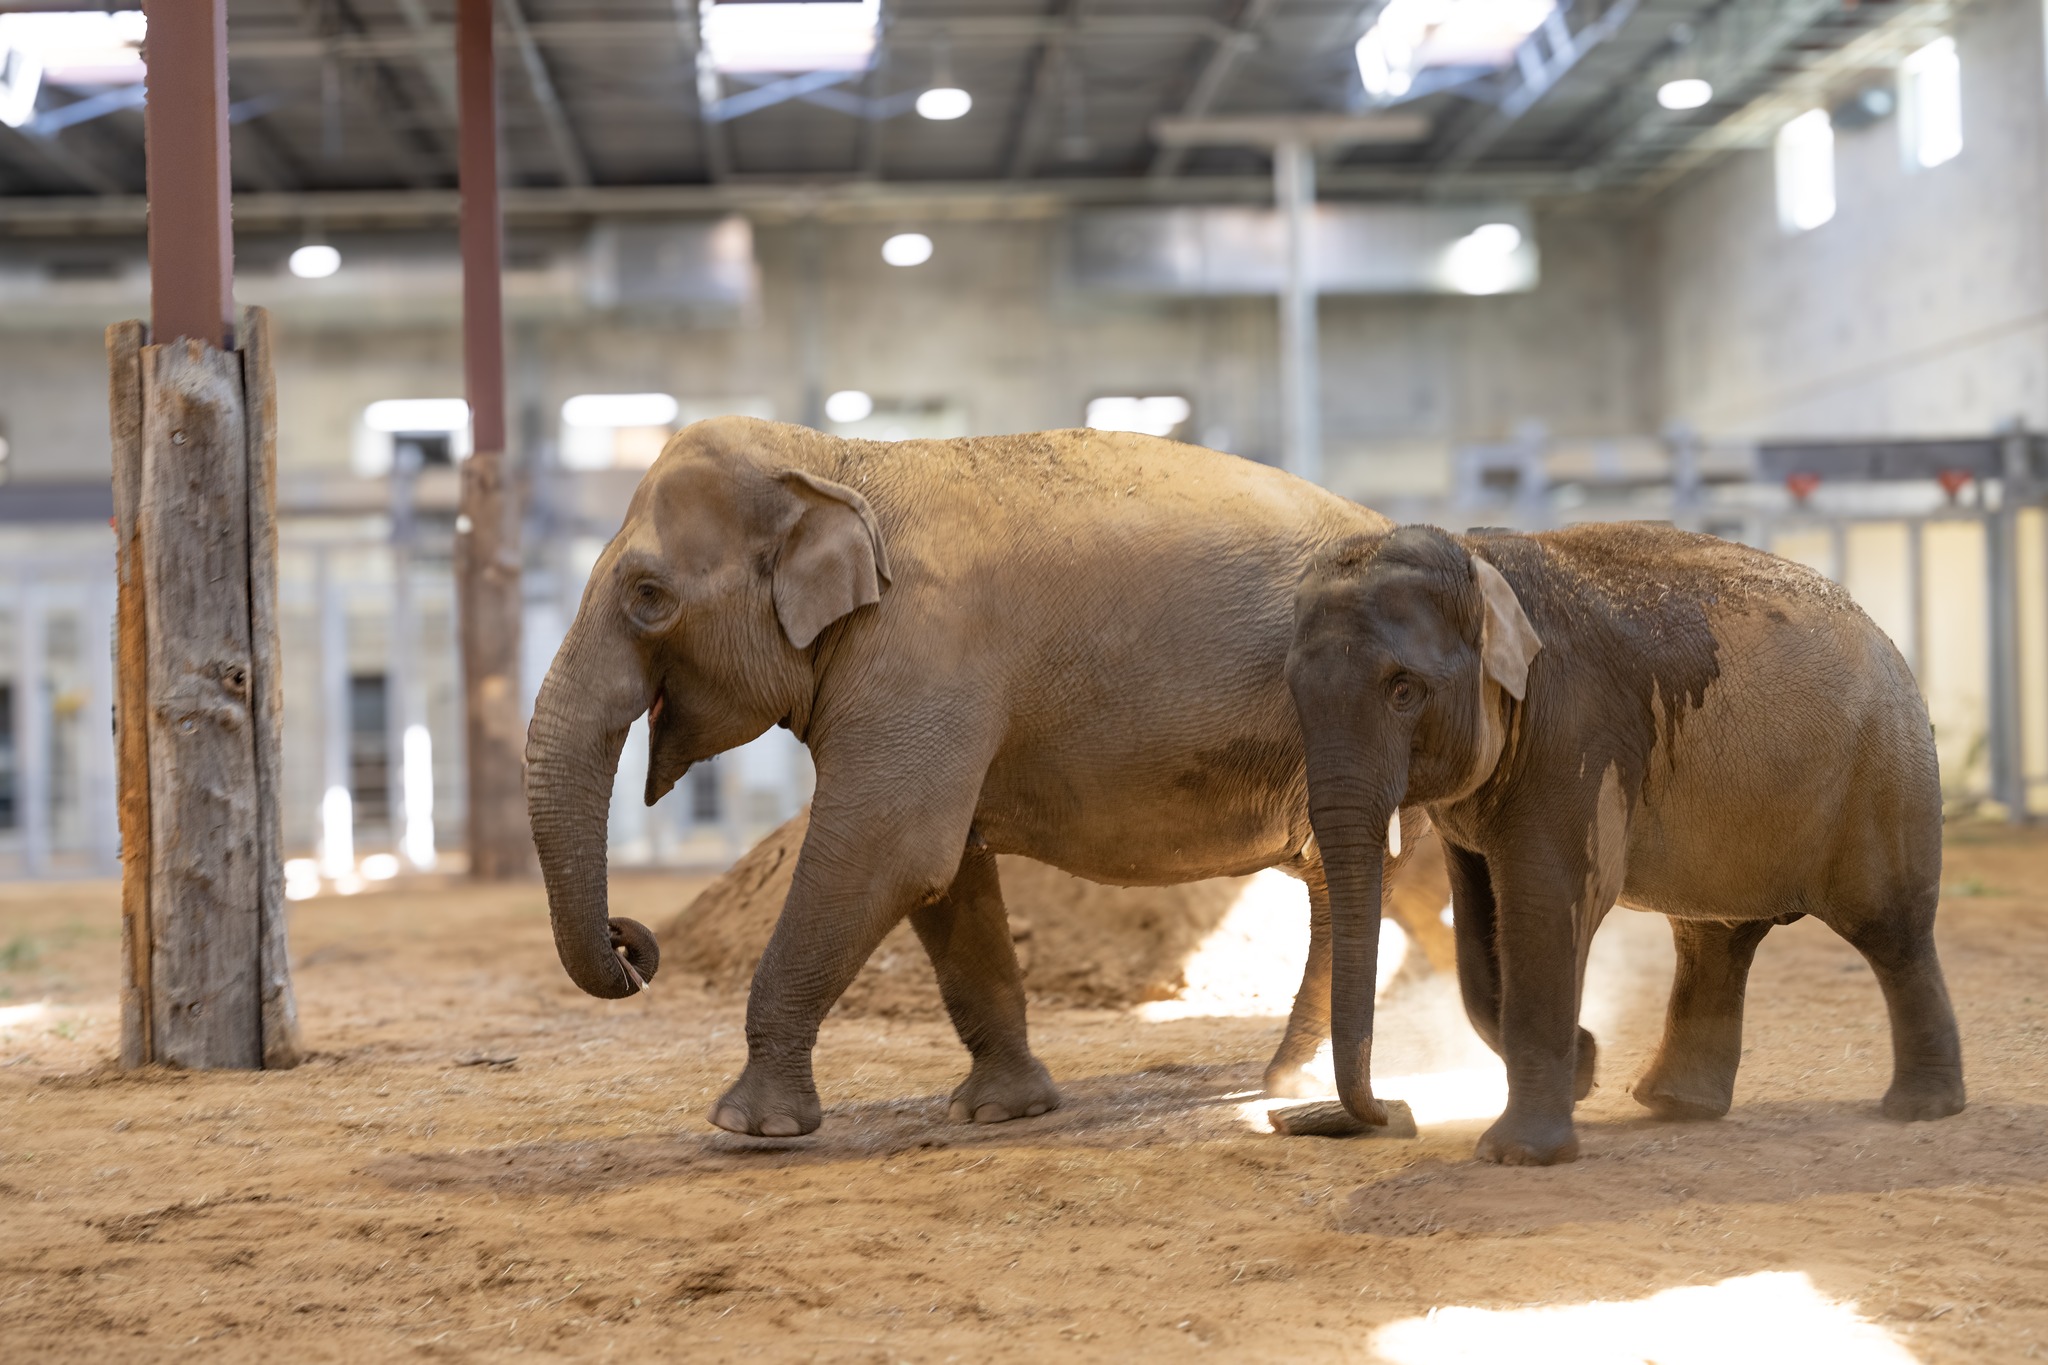 two asian elephants inside their barn on sand